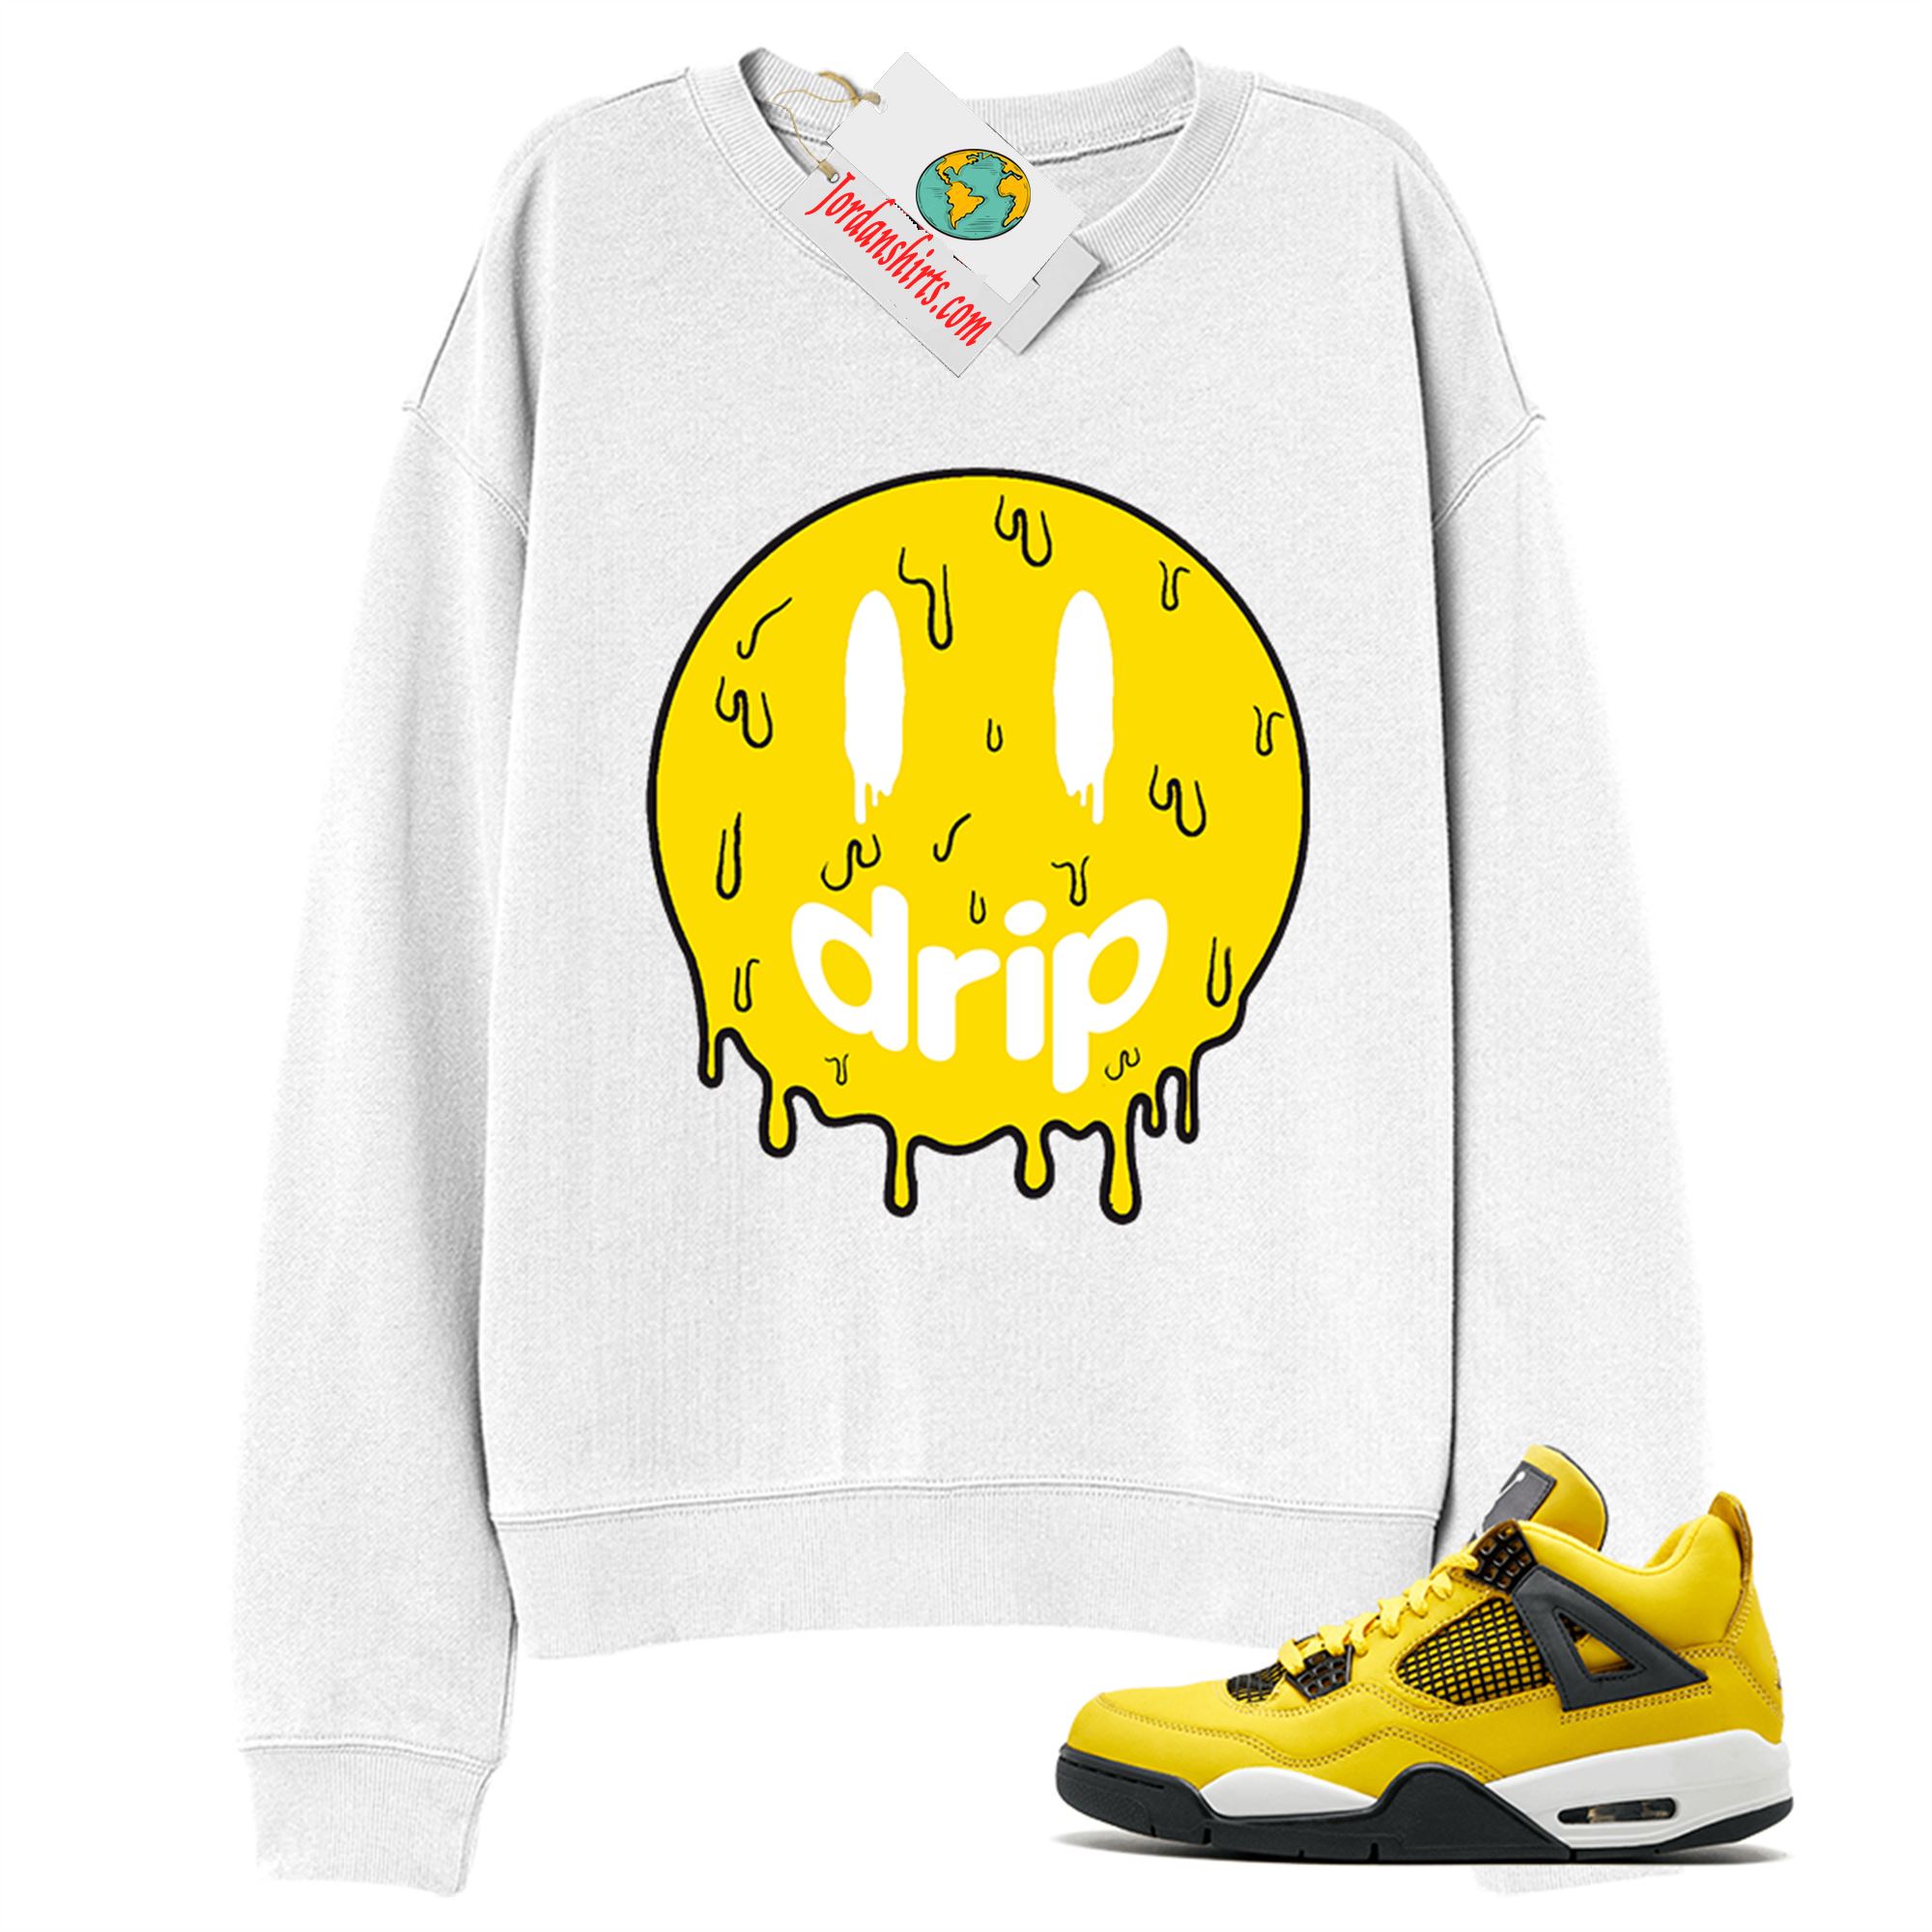 Jordan 4 Sweatshirt, Drip White Sweatshirt Air Jordan 4 Tour Yellow Lightning 4s Plus Size Up To 5xl